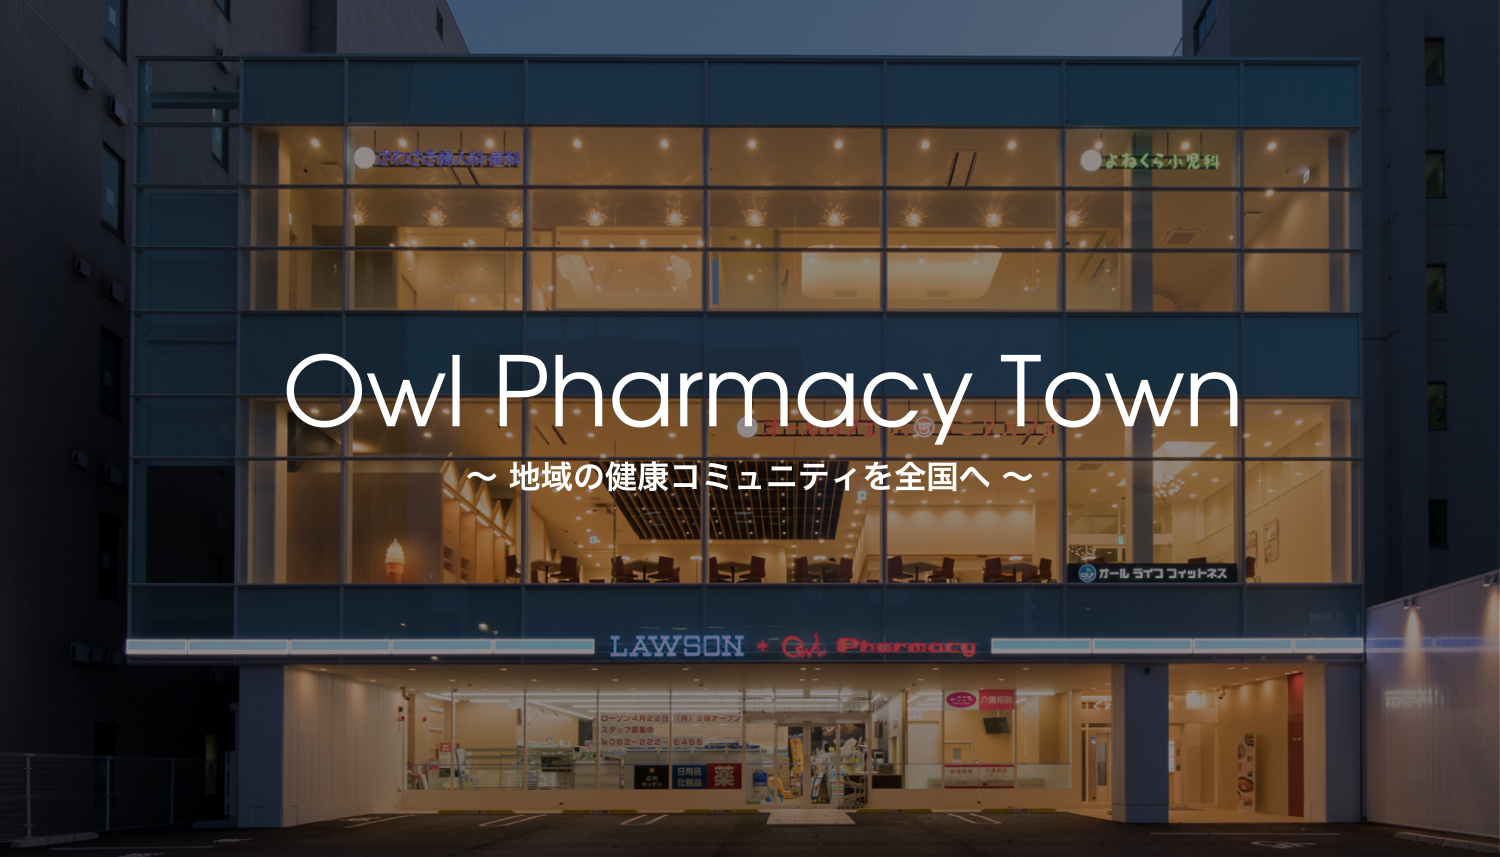  Owl Pharmacy Town　〜 地域の健康コミュニティを全国へ 〜